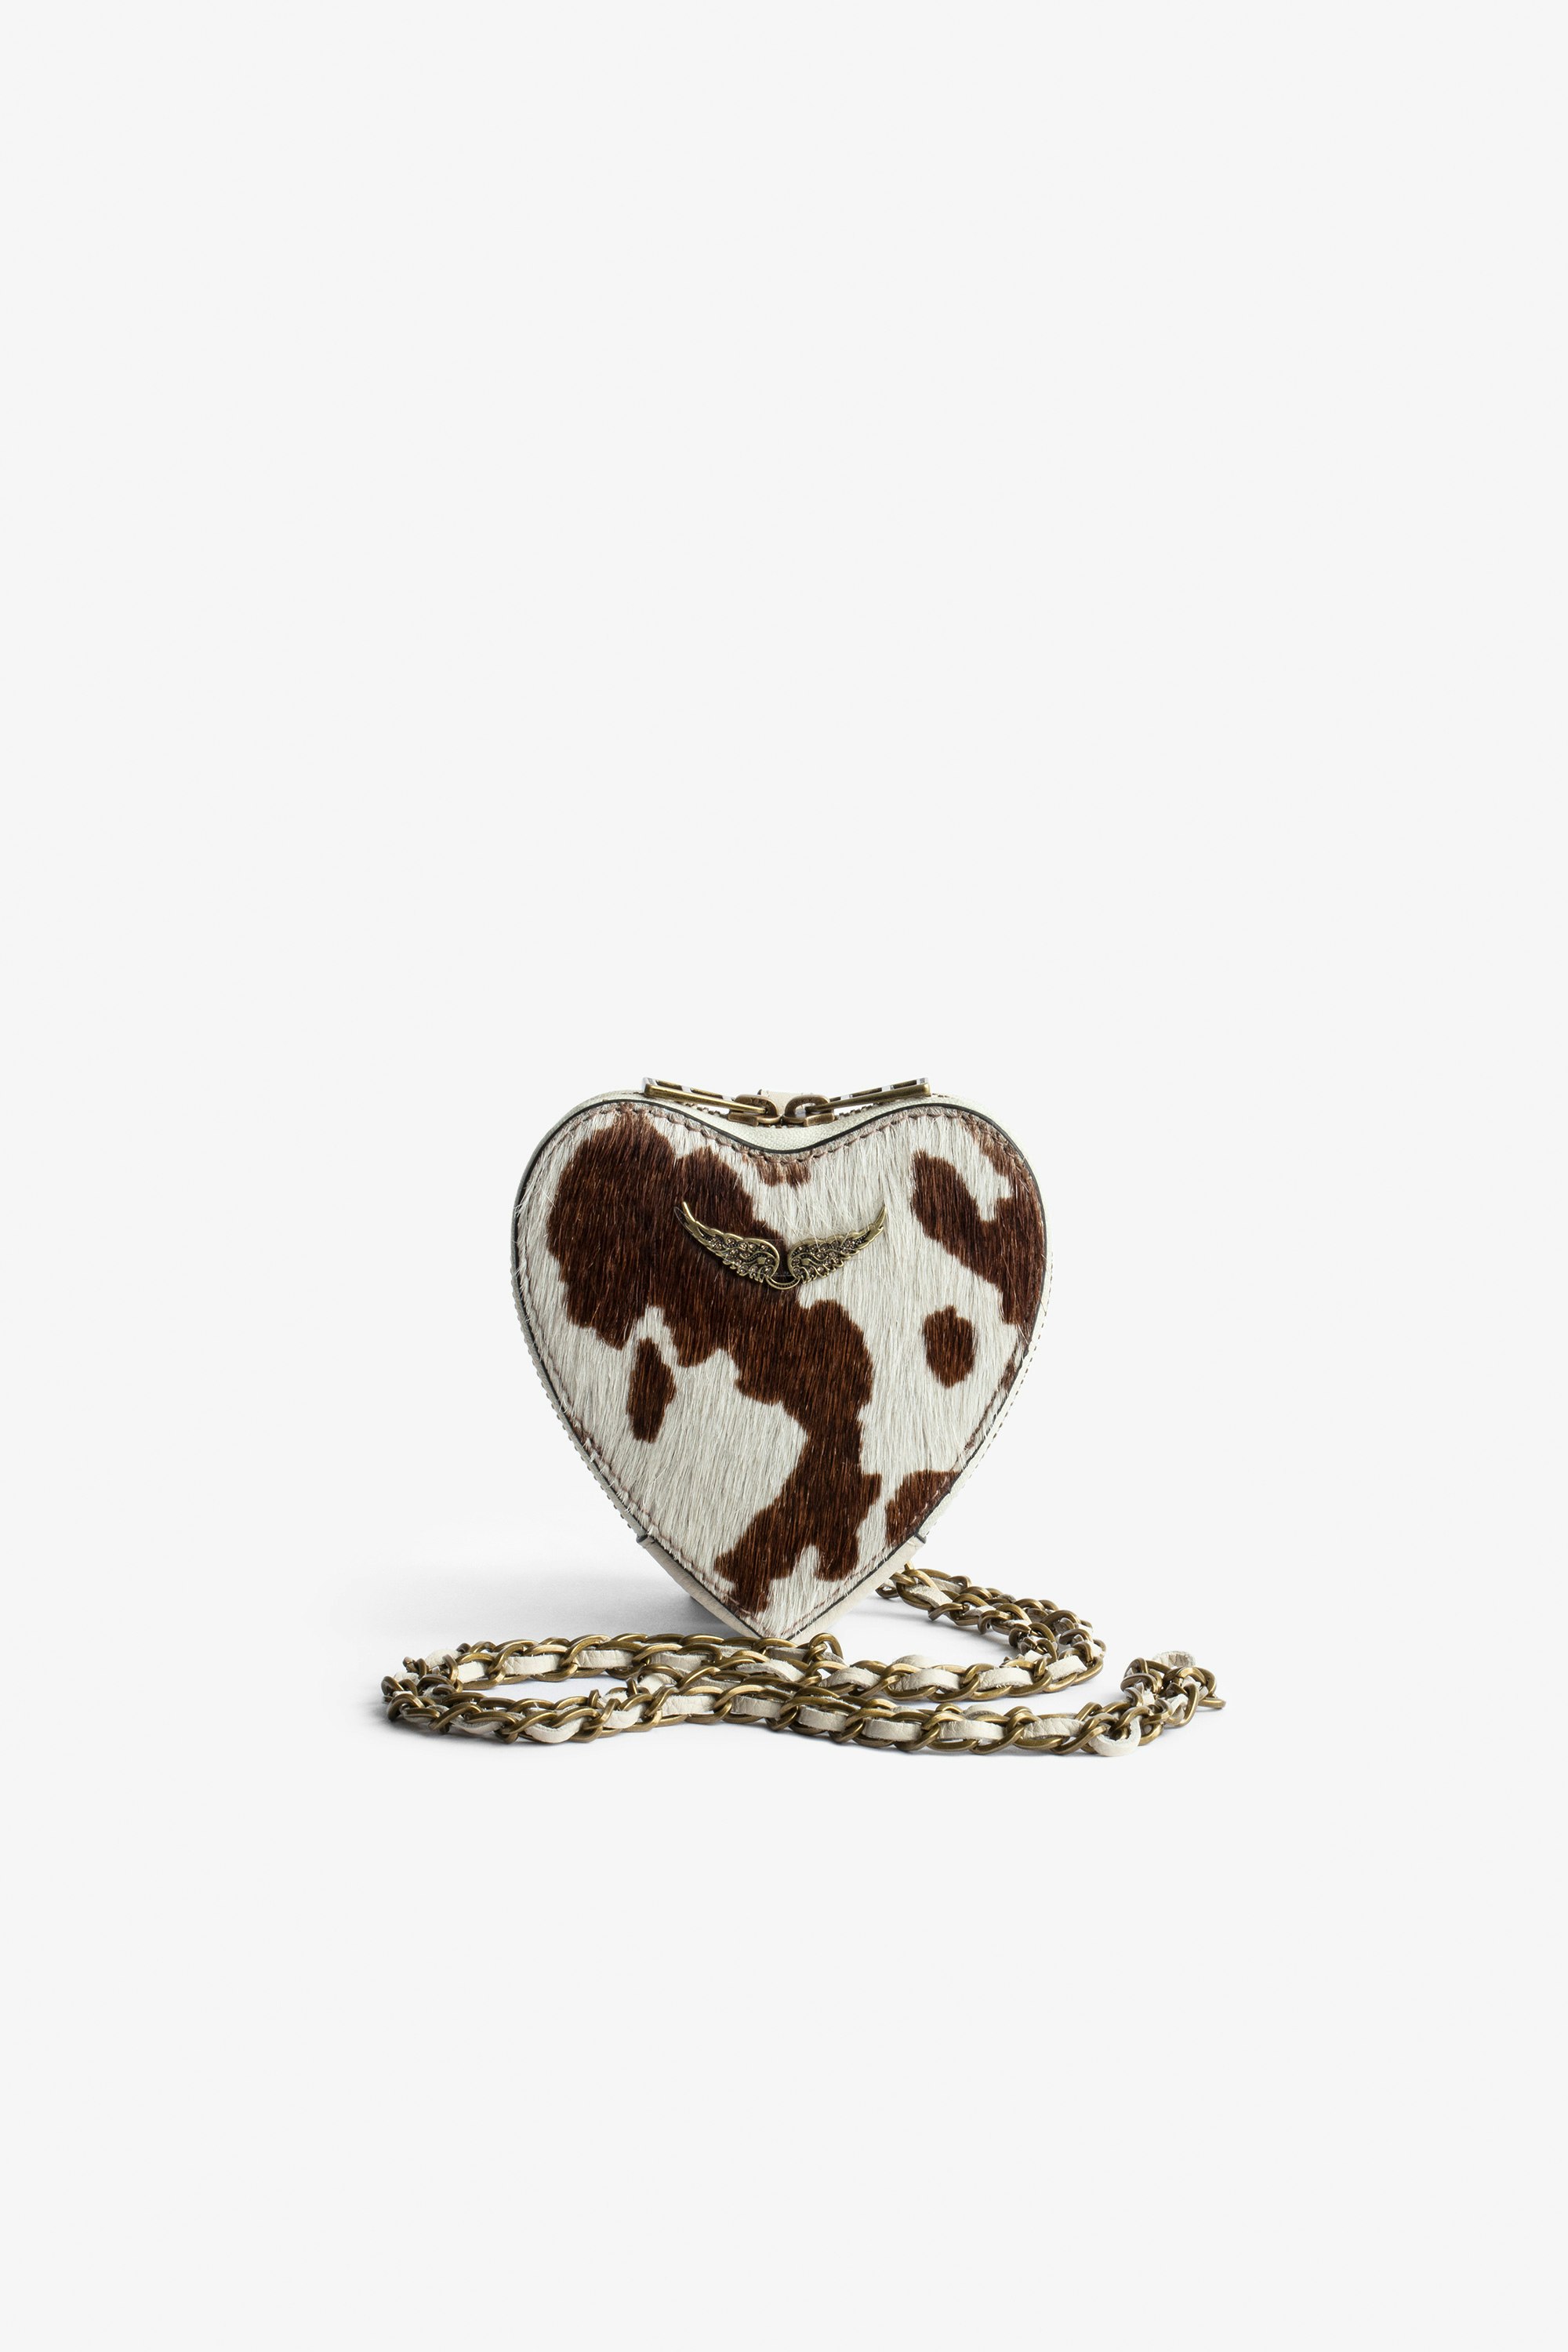 Bolso de mano ZV Crush Bolso de mano en forma de corazón marrón y blanco de piel con efecto poni para mujer con bandolera